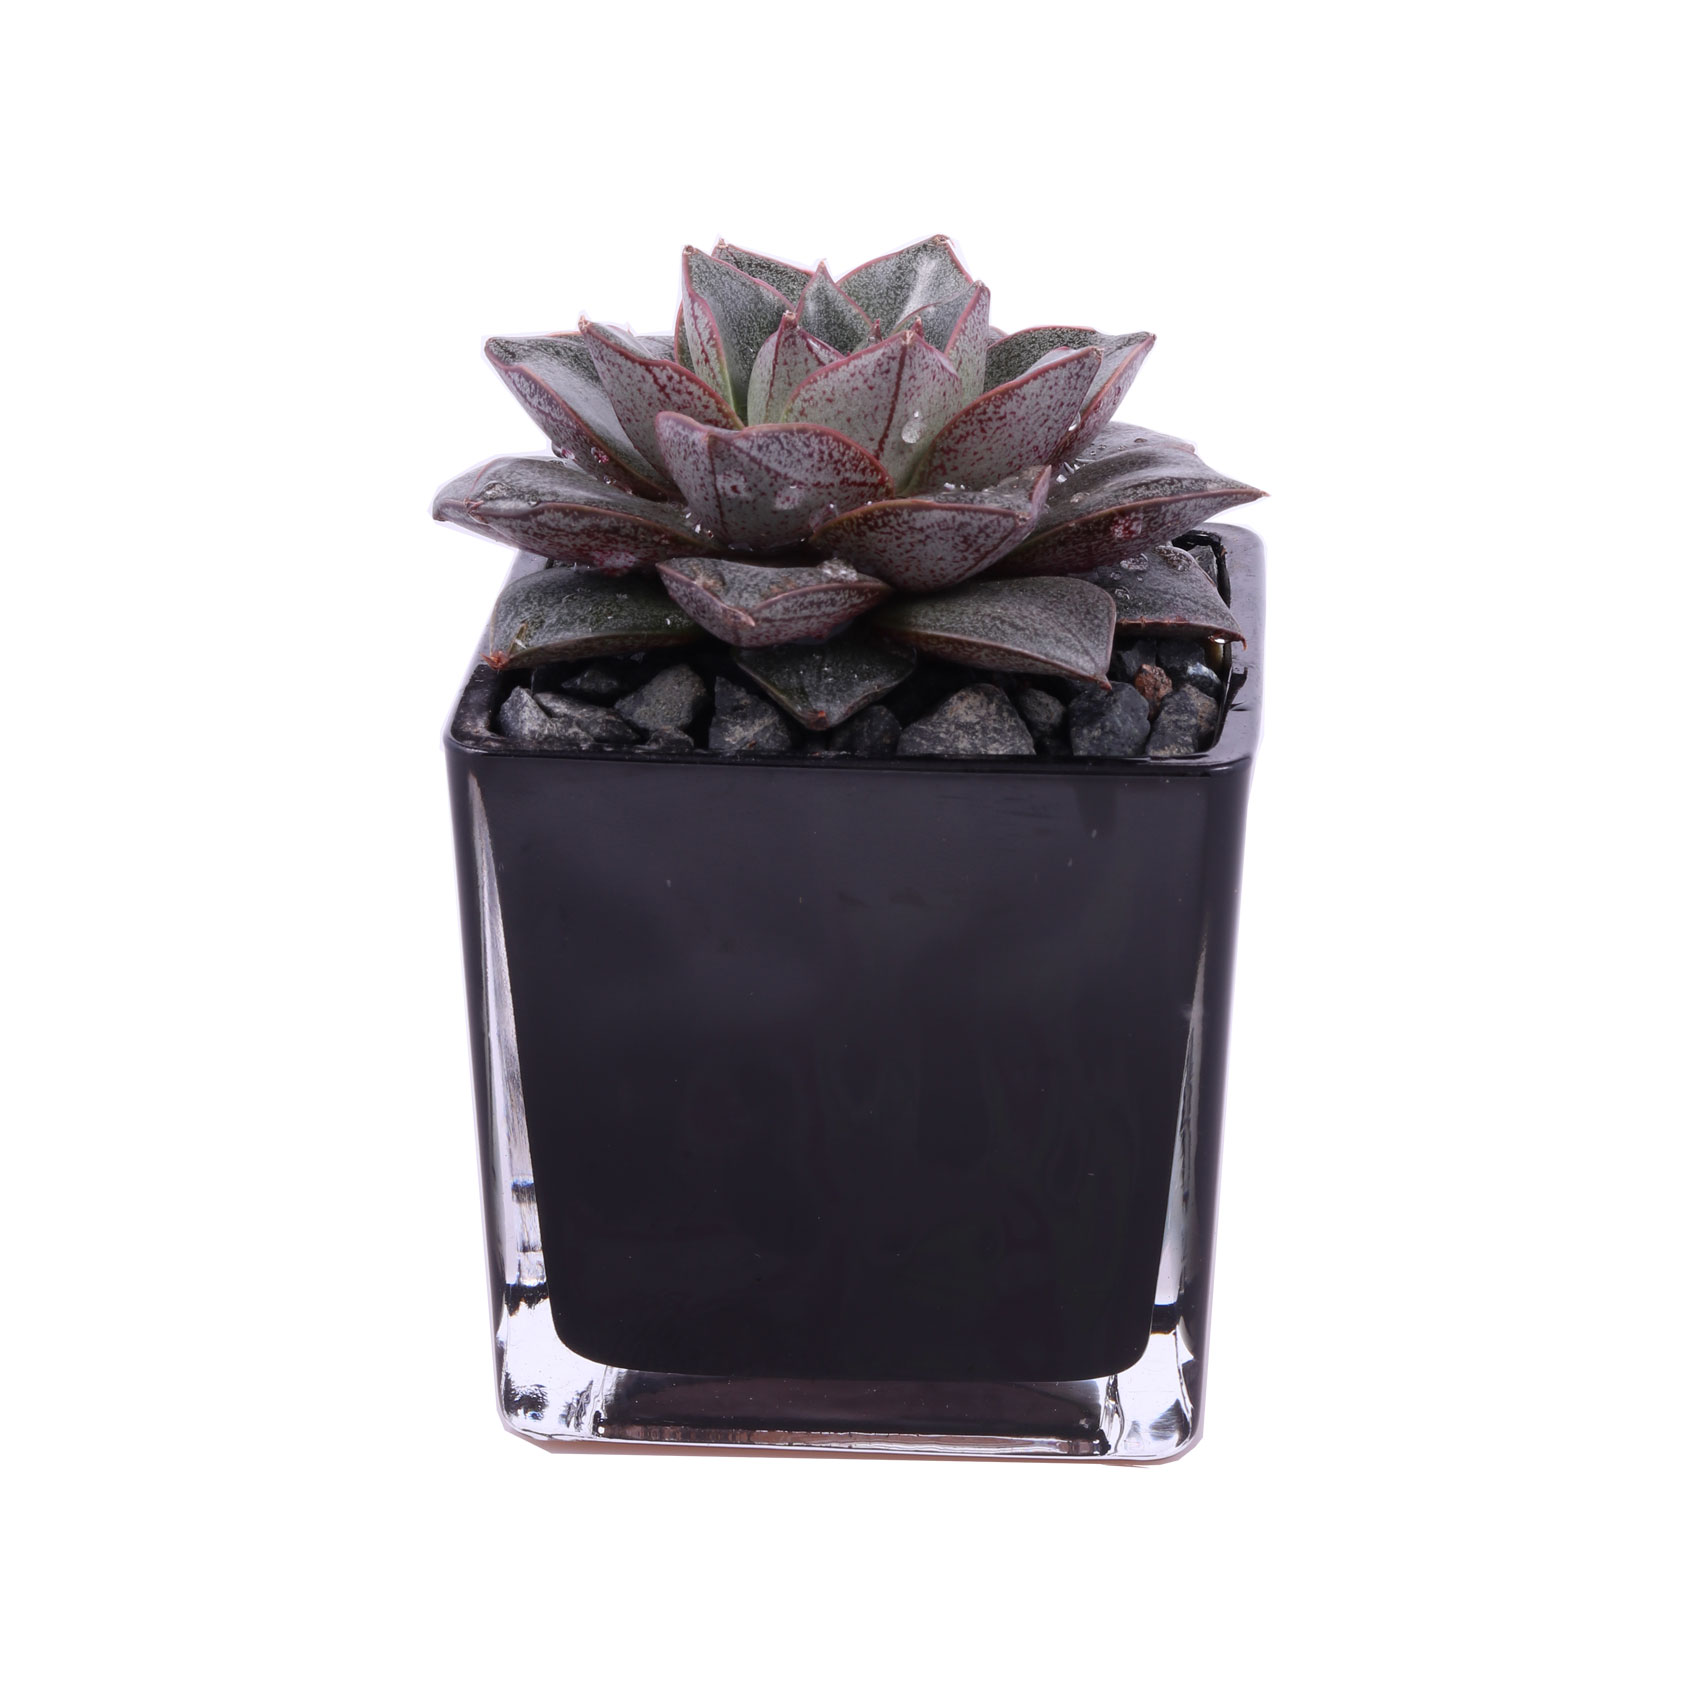 Enable Echeveria in Black Square Glass Pot 10X17cm